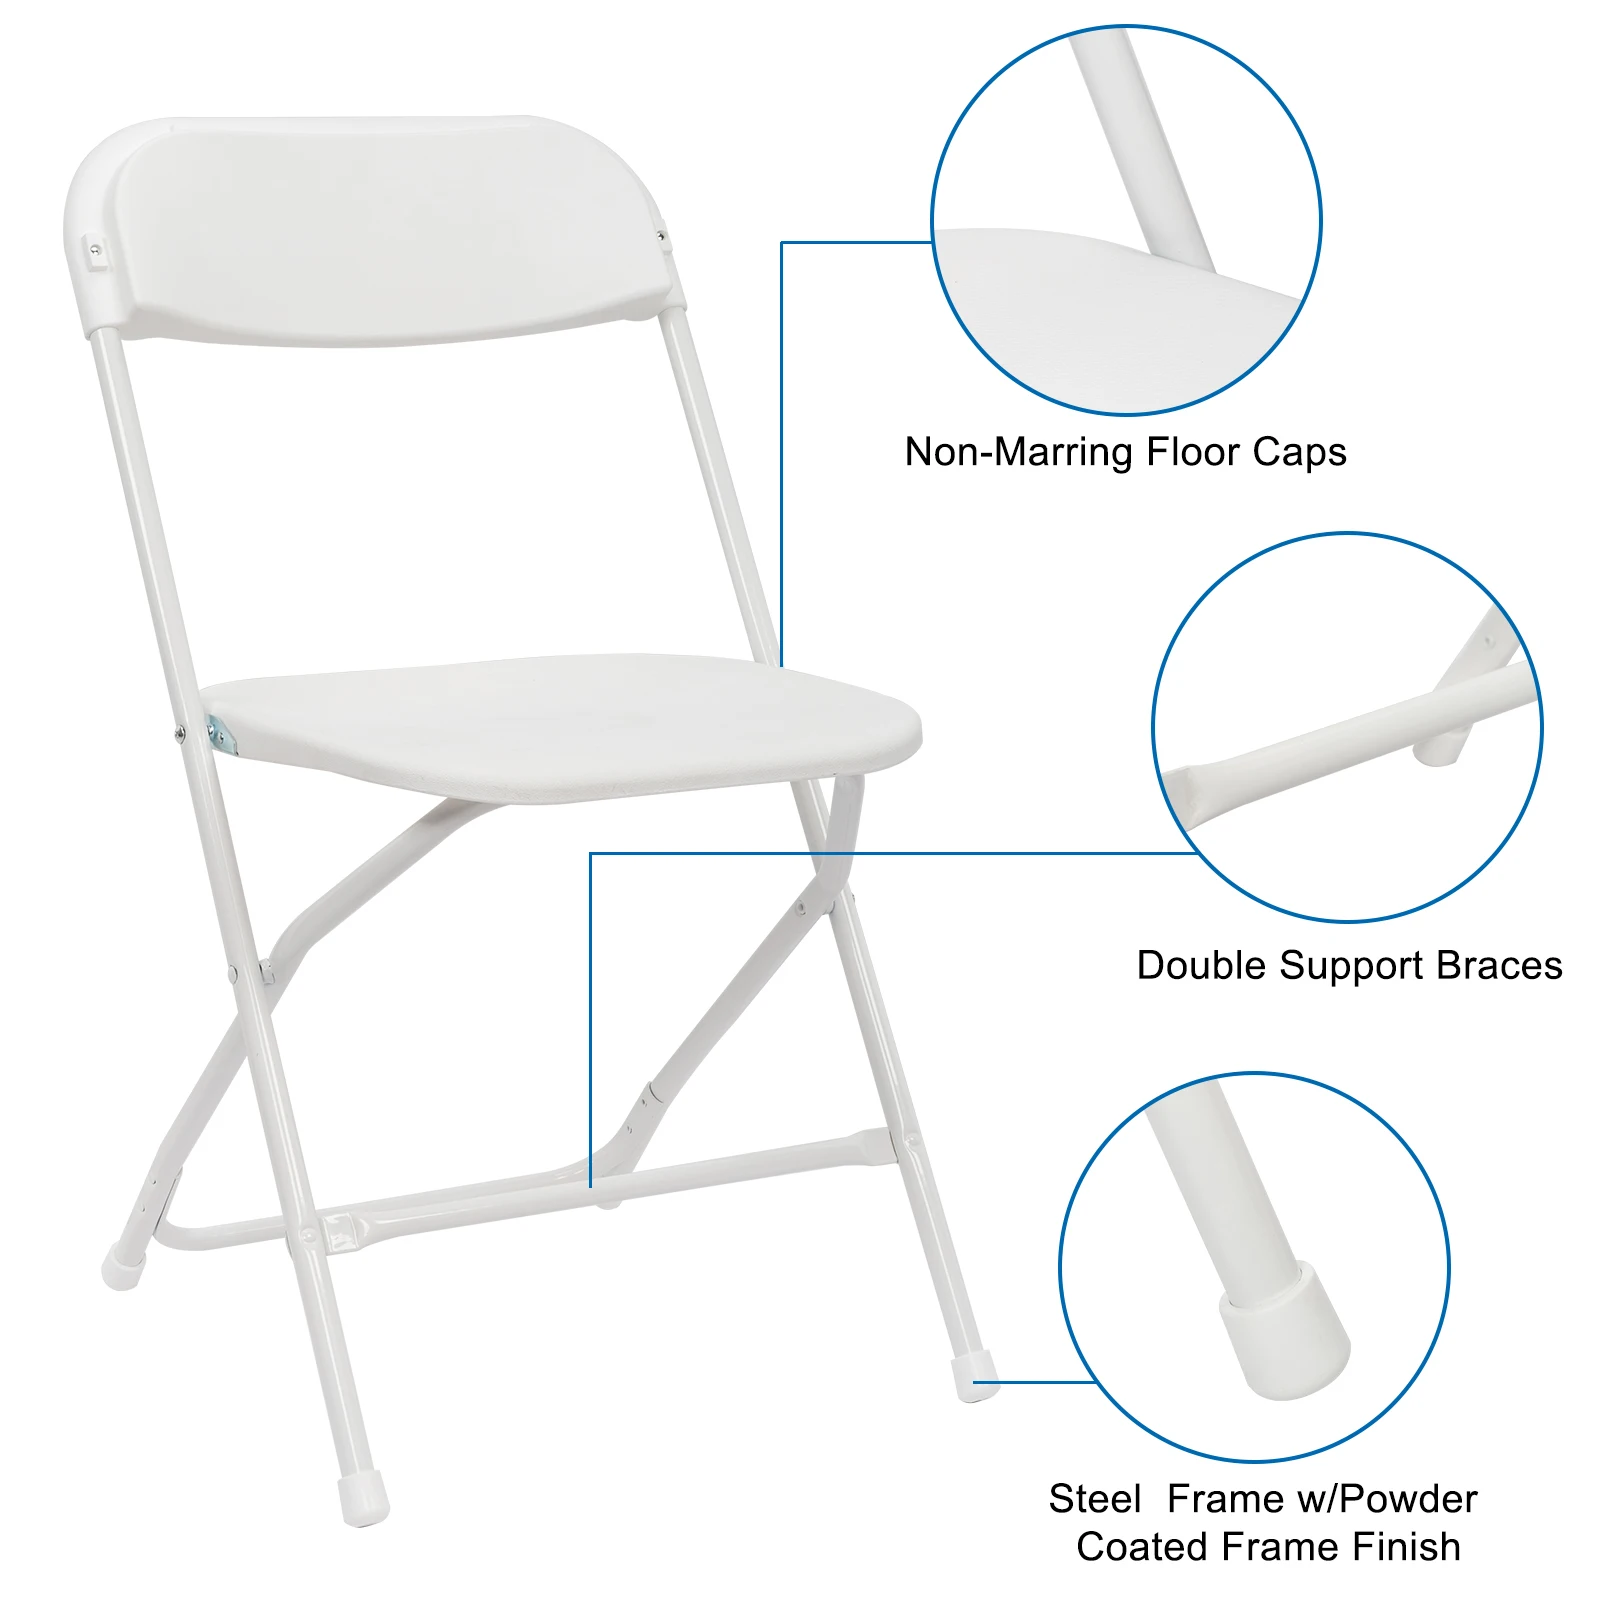 Складной стул из белого пластика в упаковке, переносное складываемое коммерческое сиденье для помещений и улицы со стальной рамой весом 260 фунтов. Вместимость